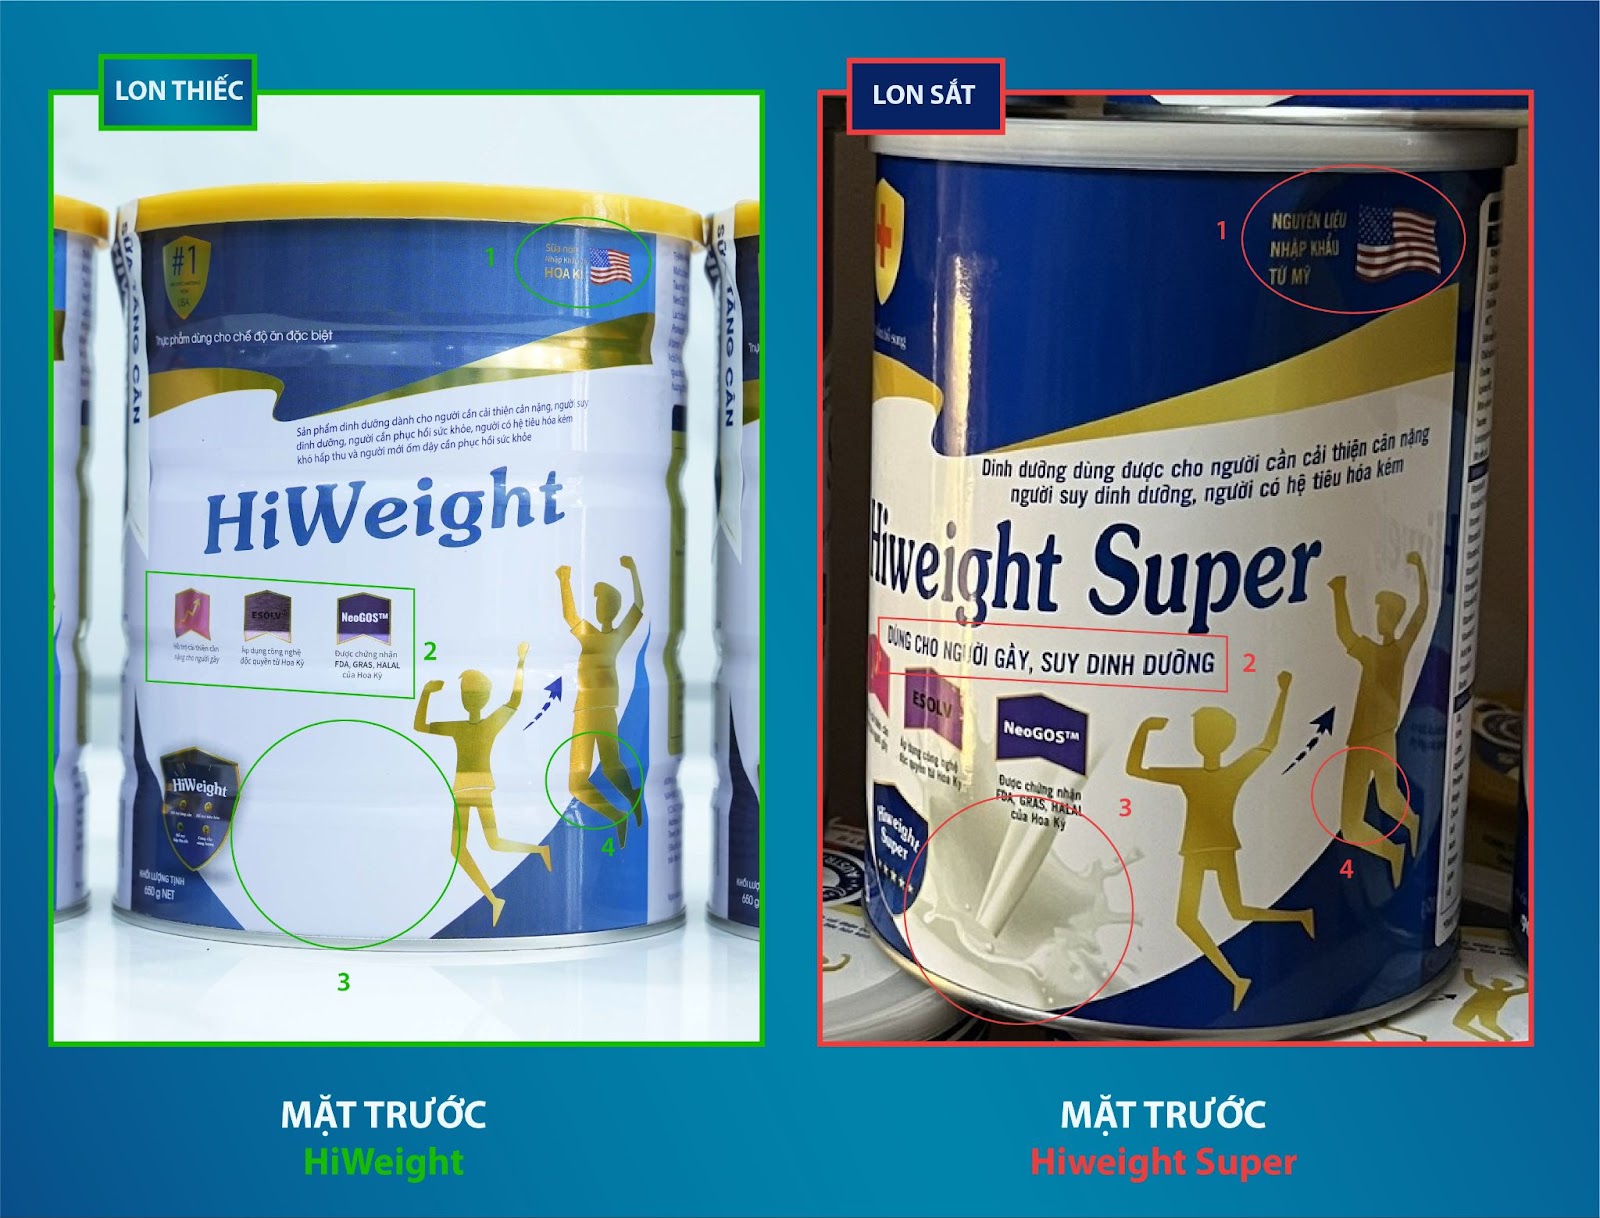 Sản phẩm Hiweight Super: 'Đạo nhái' hình ảnh sữa HiWeight?